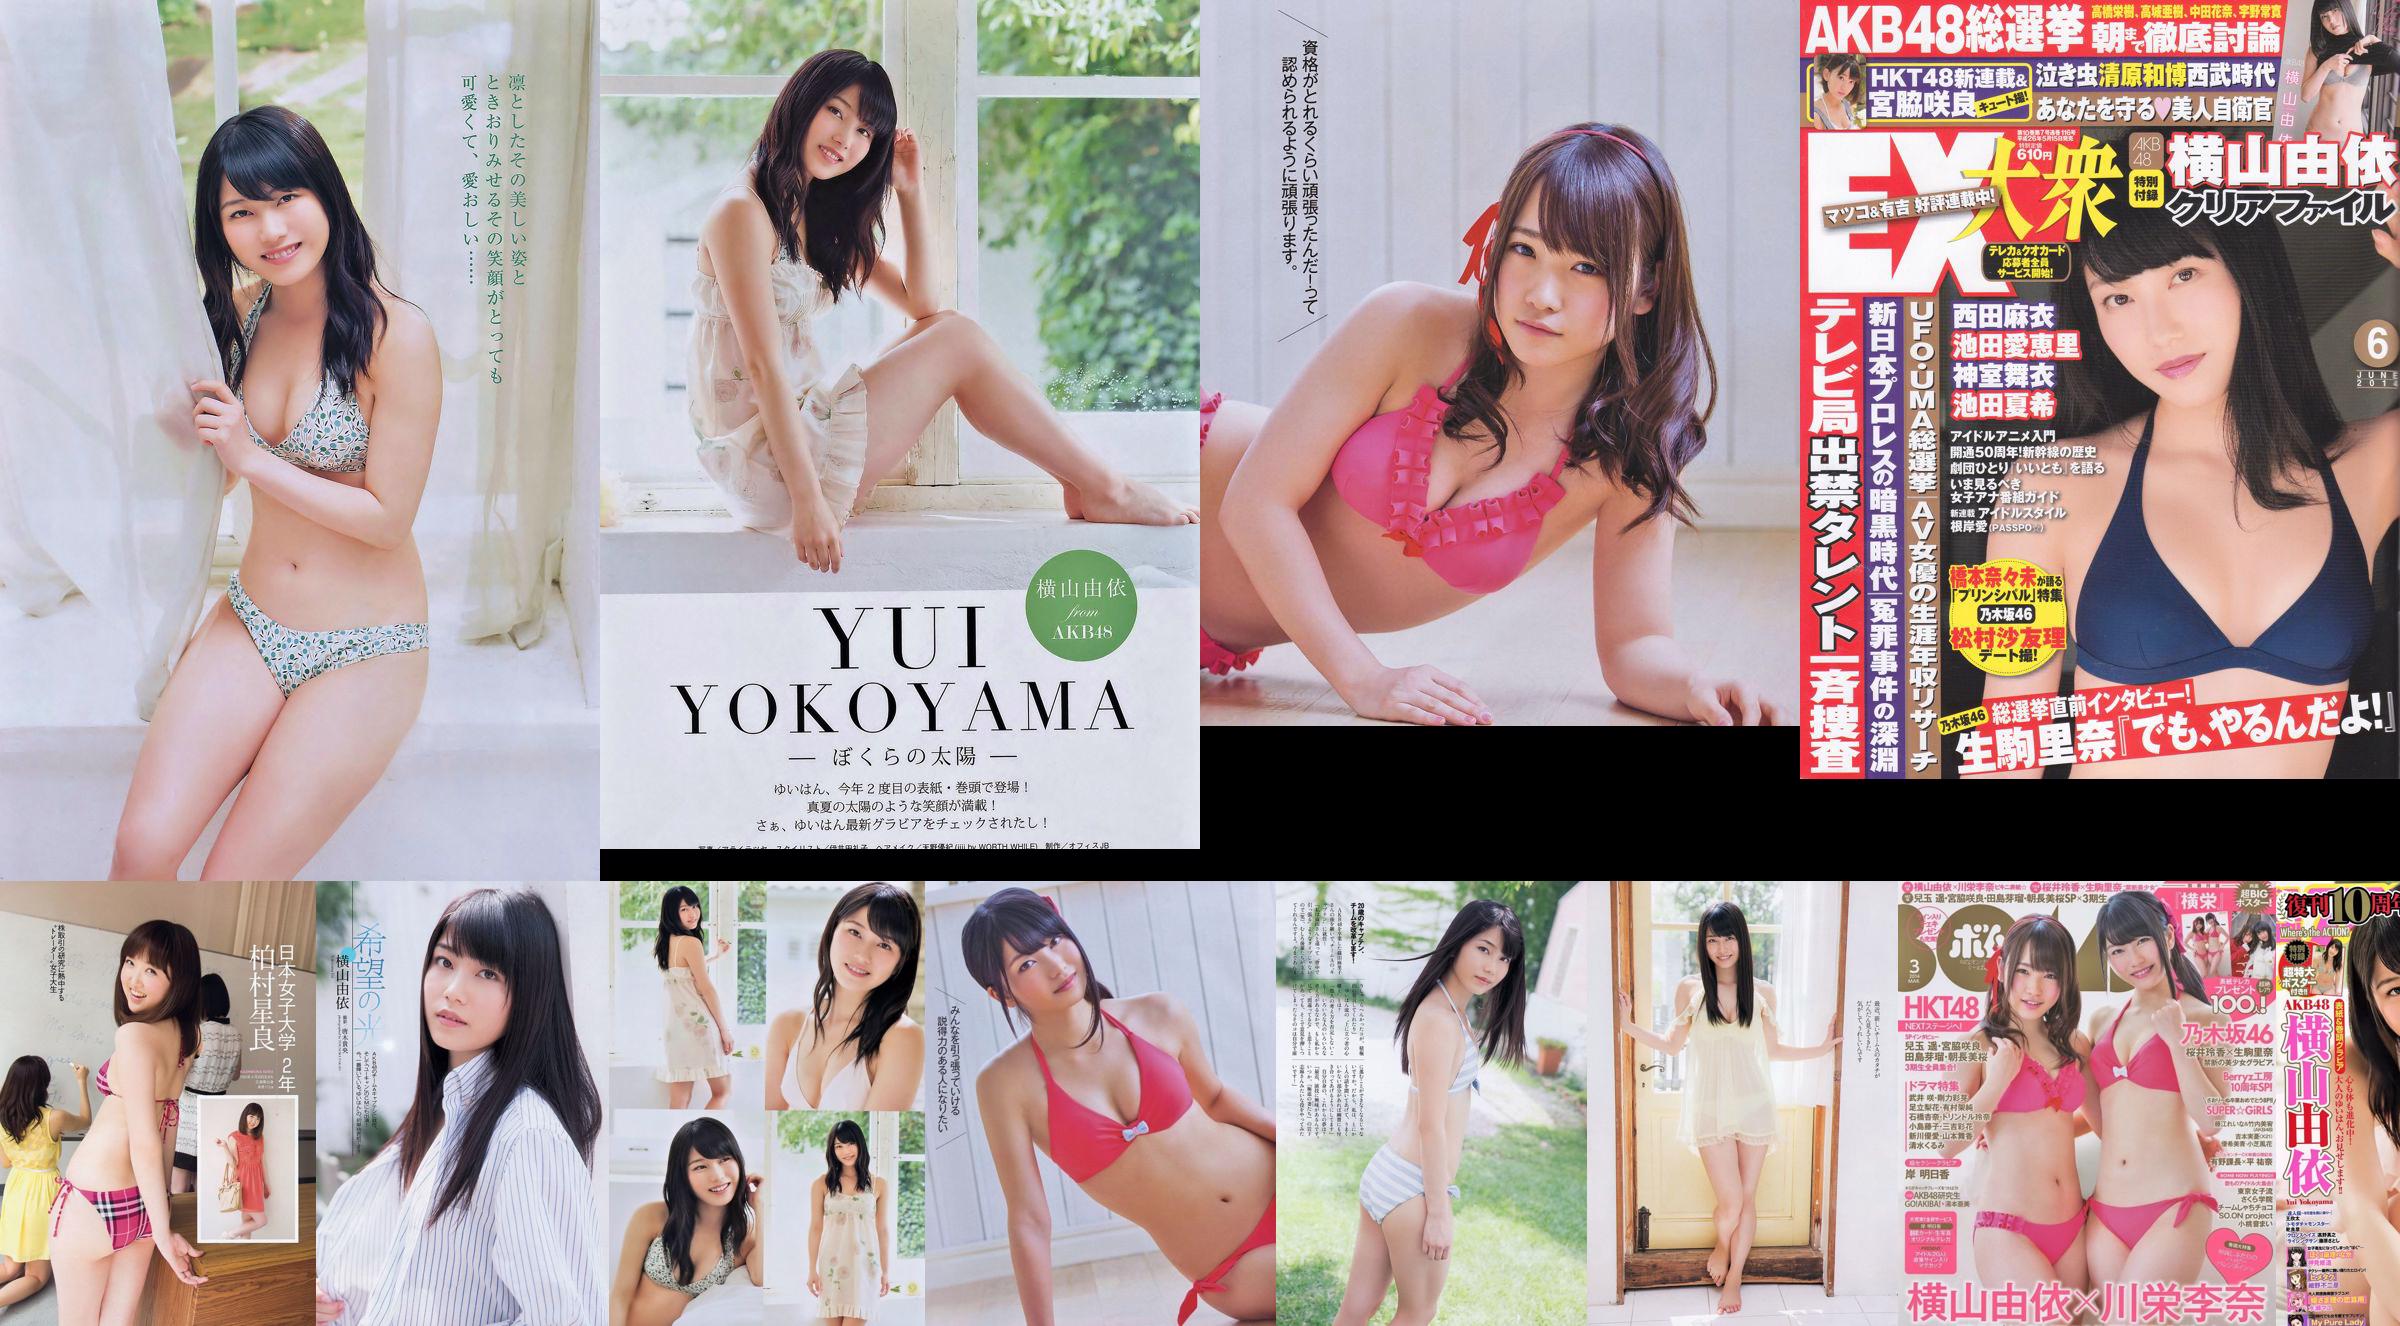 Yui Yokoyama Nozomi Sasaki Rina Koike Asuka Kuramochi Miwako Kakei Risa Yoshiki Ruri Shinato [Playboy Semanal] 2013 No.38 Fotografia No.01bfab Página 3